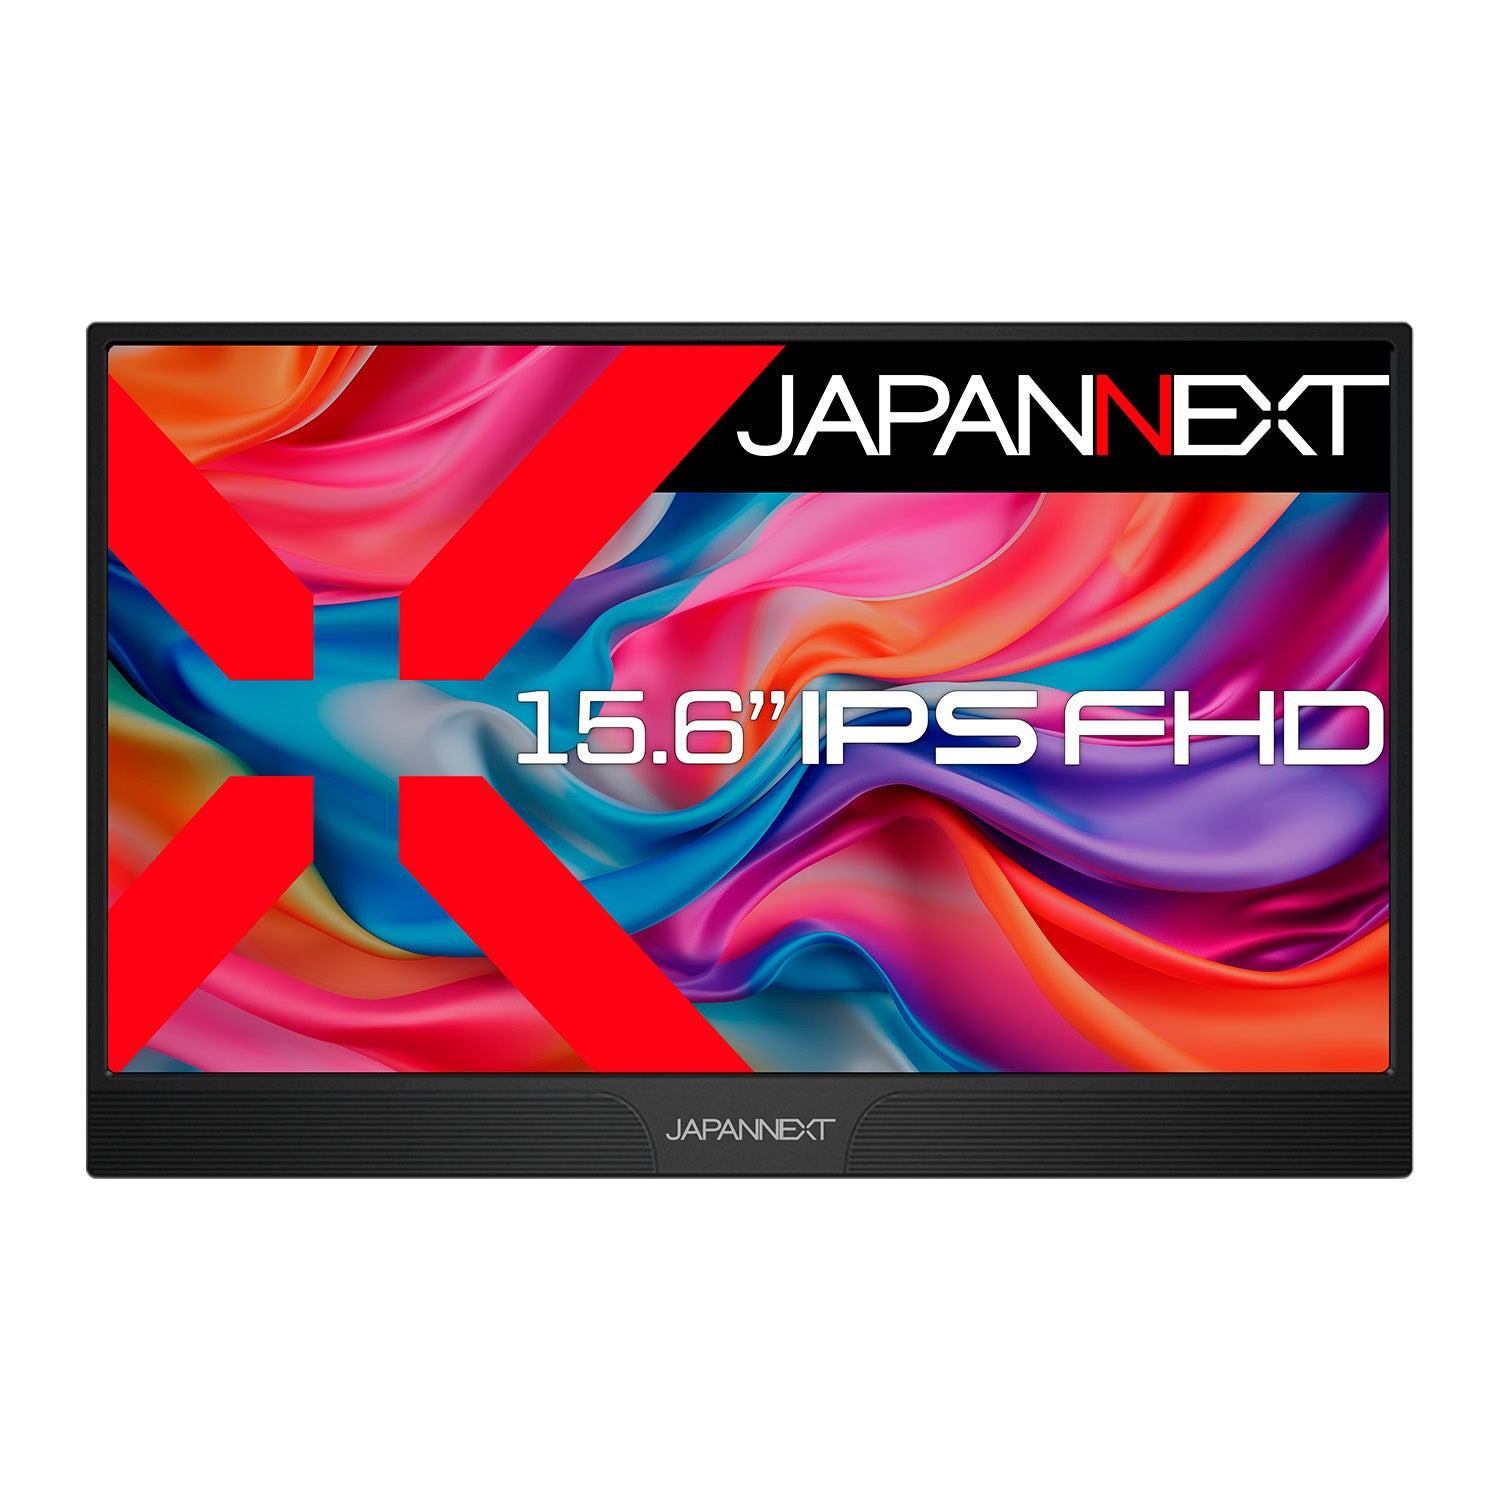 JAPANNEXT 15.6インチ IPSパネル搭載 フルHD(1920x1080)解像度 モバイルモニター JN-MD-IPS1565FHDR  miniHDMI USB Type-C HDR スマートケース付き